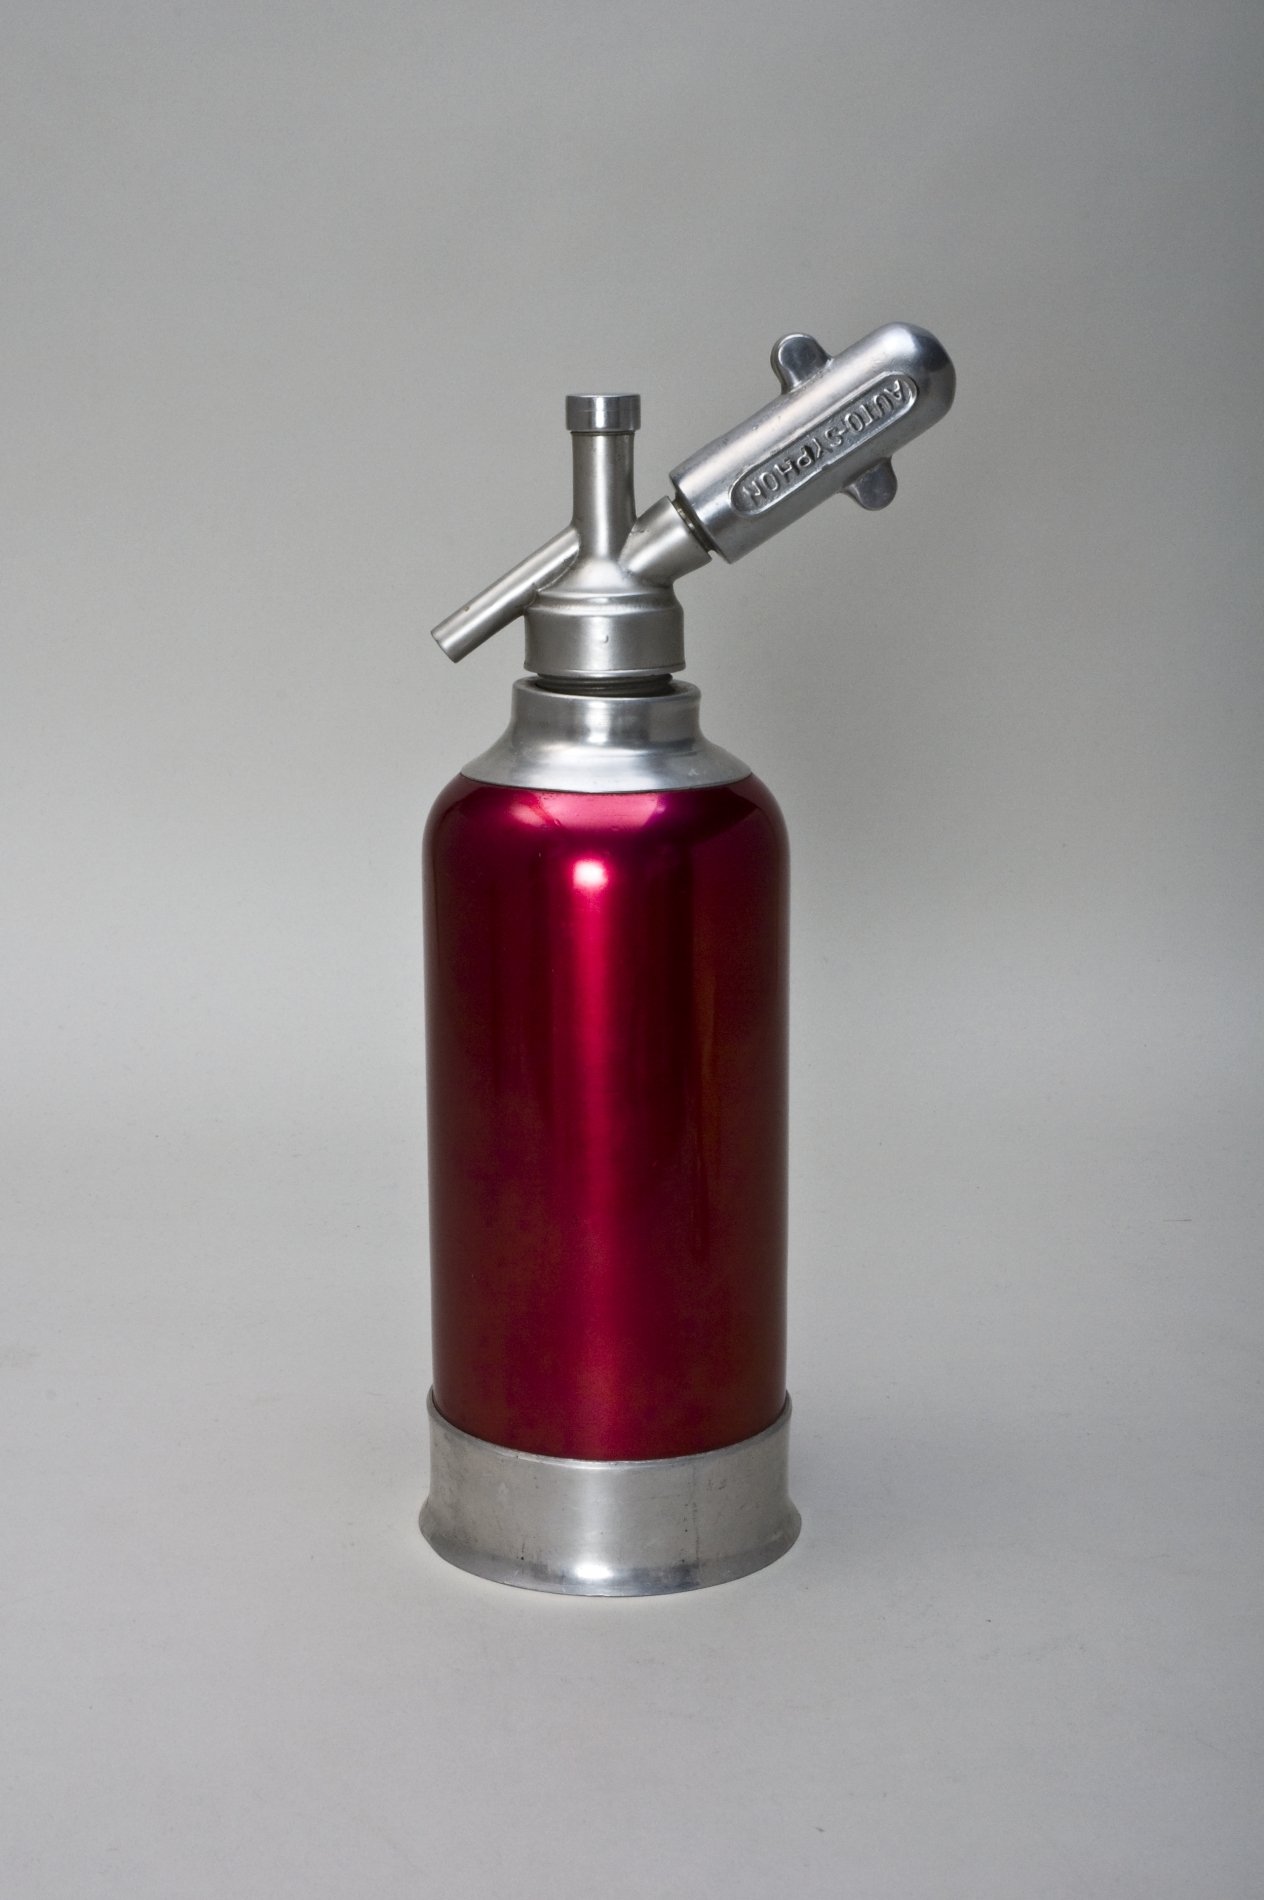 Siphonflasche (Sodawasserbereiter) "AUTOSYPHON" (Stiftung Domäne Dahlem - Landgut und Museum, Weiternutzung nur mit Genehmigung des Museums CC BY-NC-SA)